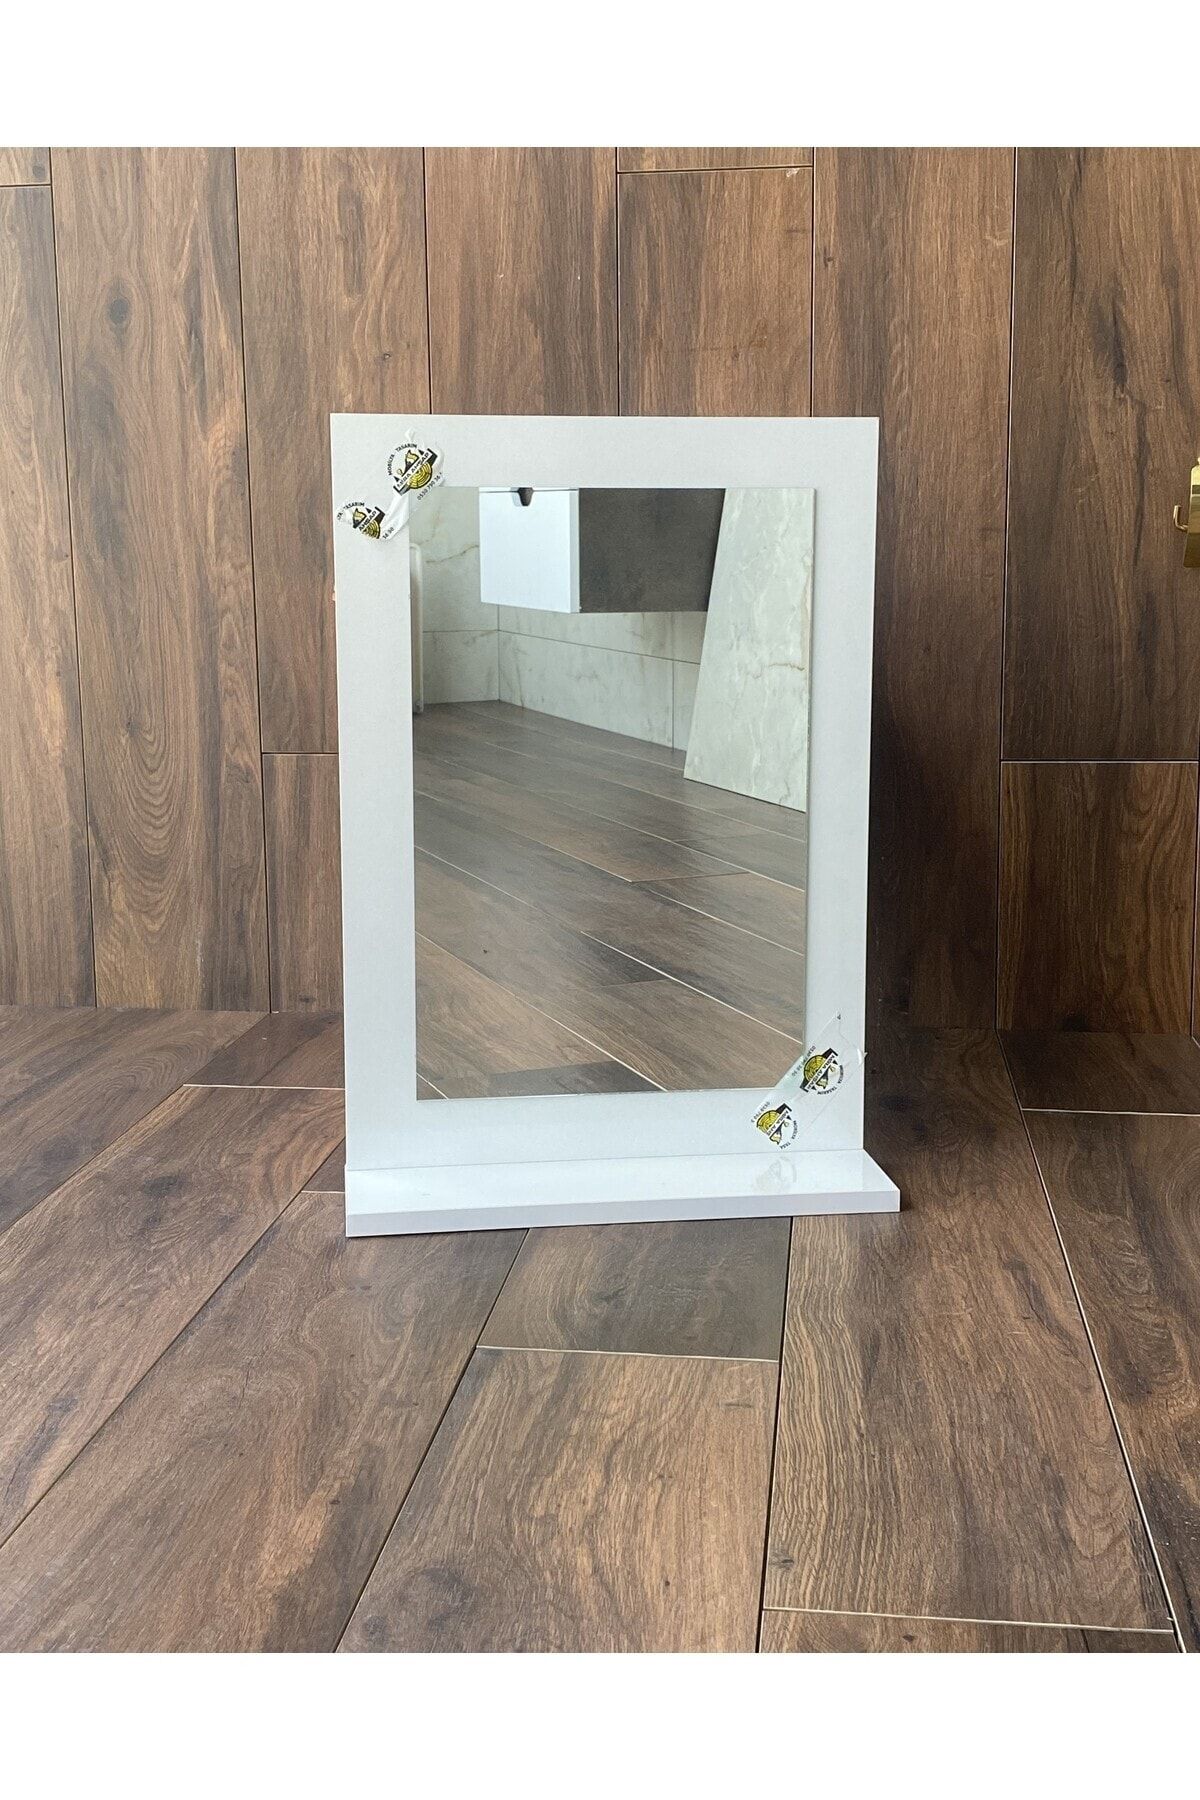 Mirapet Mira Ahşap Beyaz Raflı Banyo Aynası - Banyo Dolabı - Ofis Bahçe WC Lavabo Aynası (60x45 cm) DİK